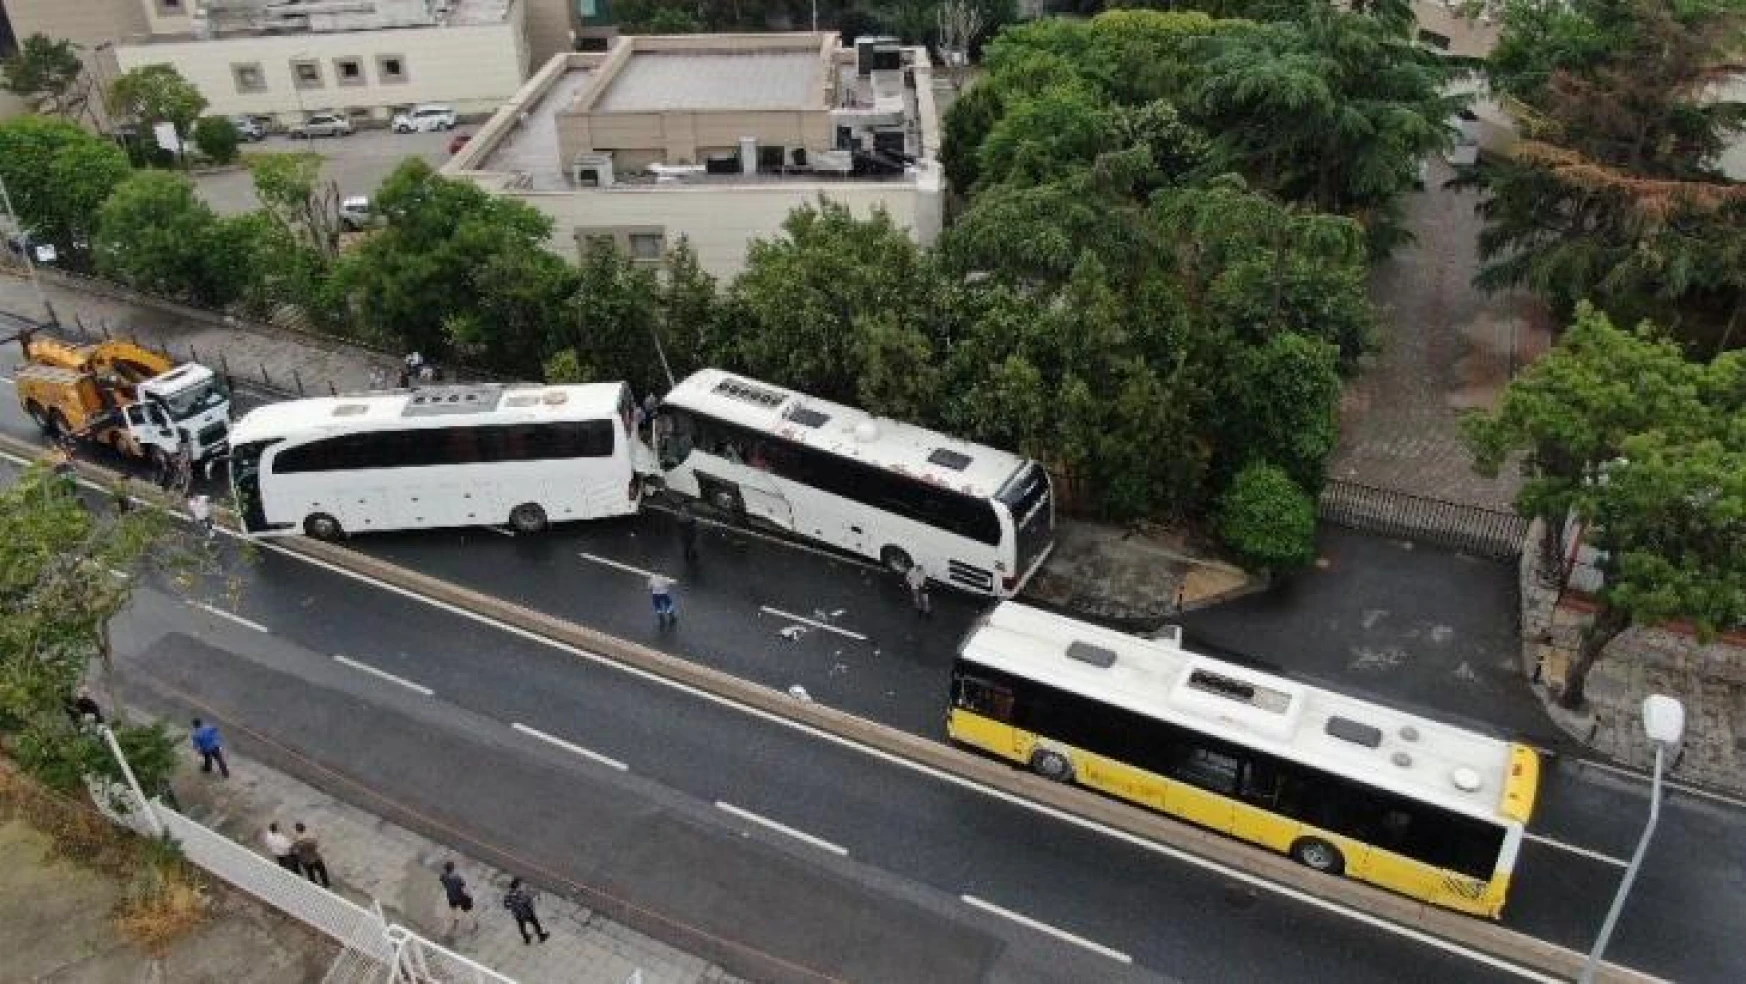 Üsküdar'da İETT otobüsü ile iki tur otobüsü çarpıştı, ortalık savaş alanına döndü